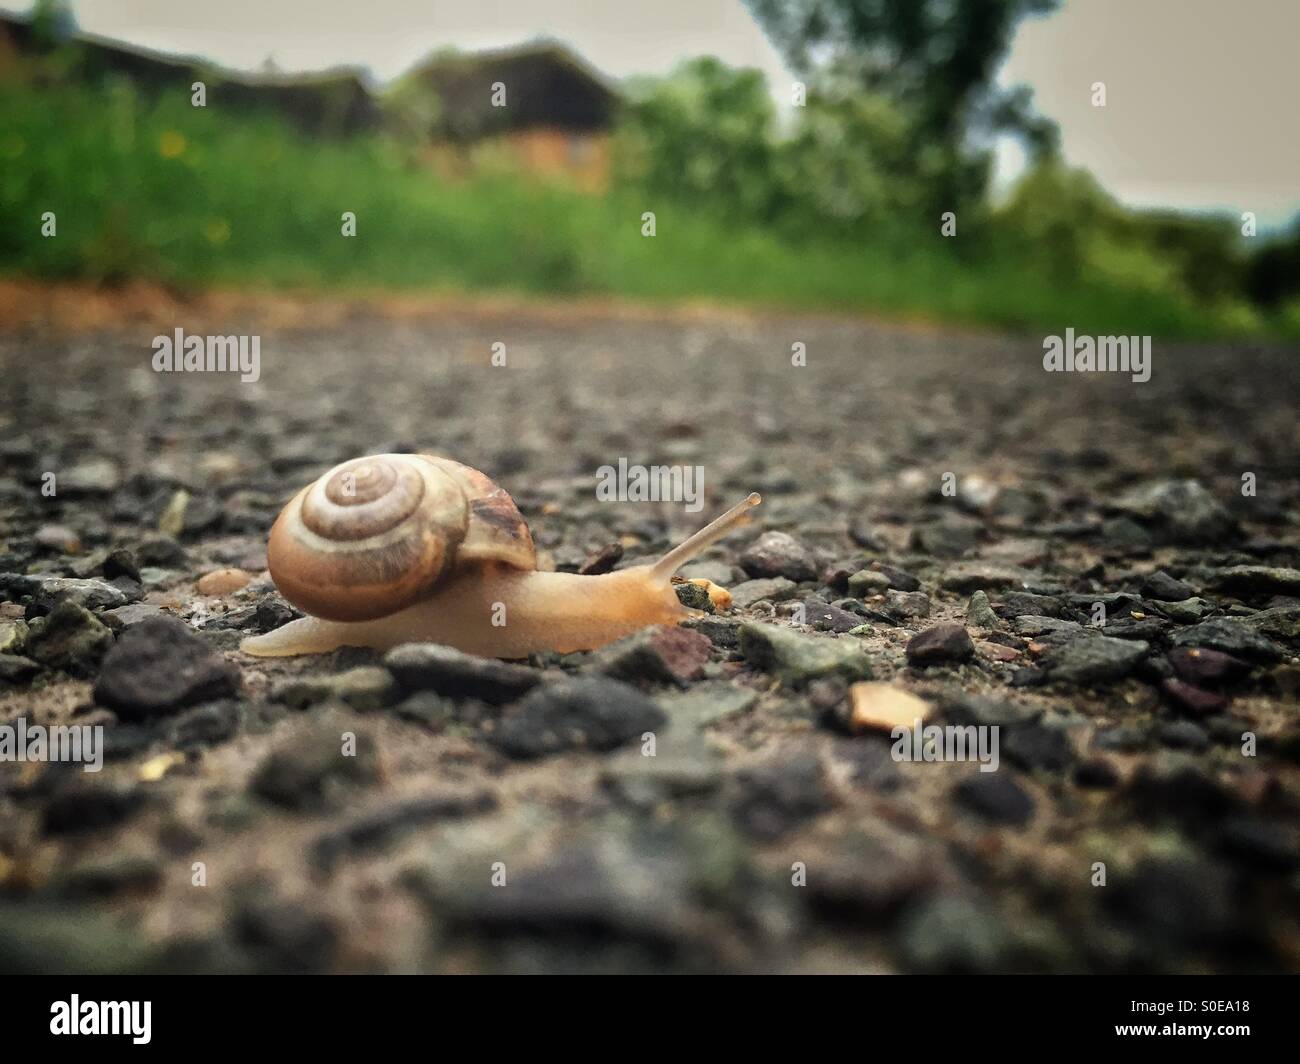 Snail's Eye View Stock Photo